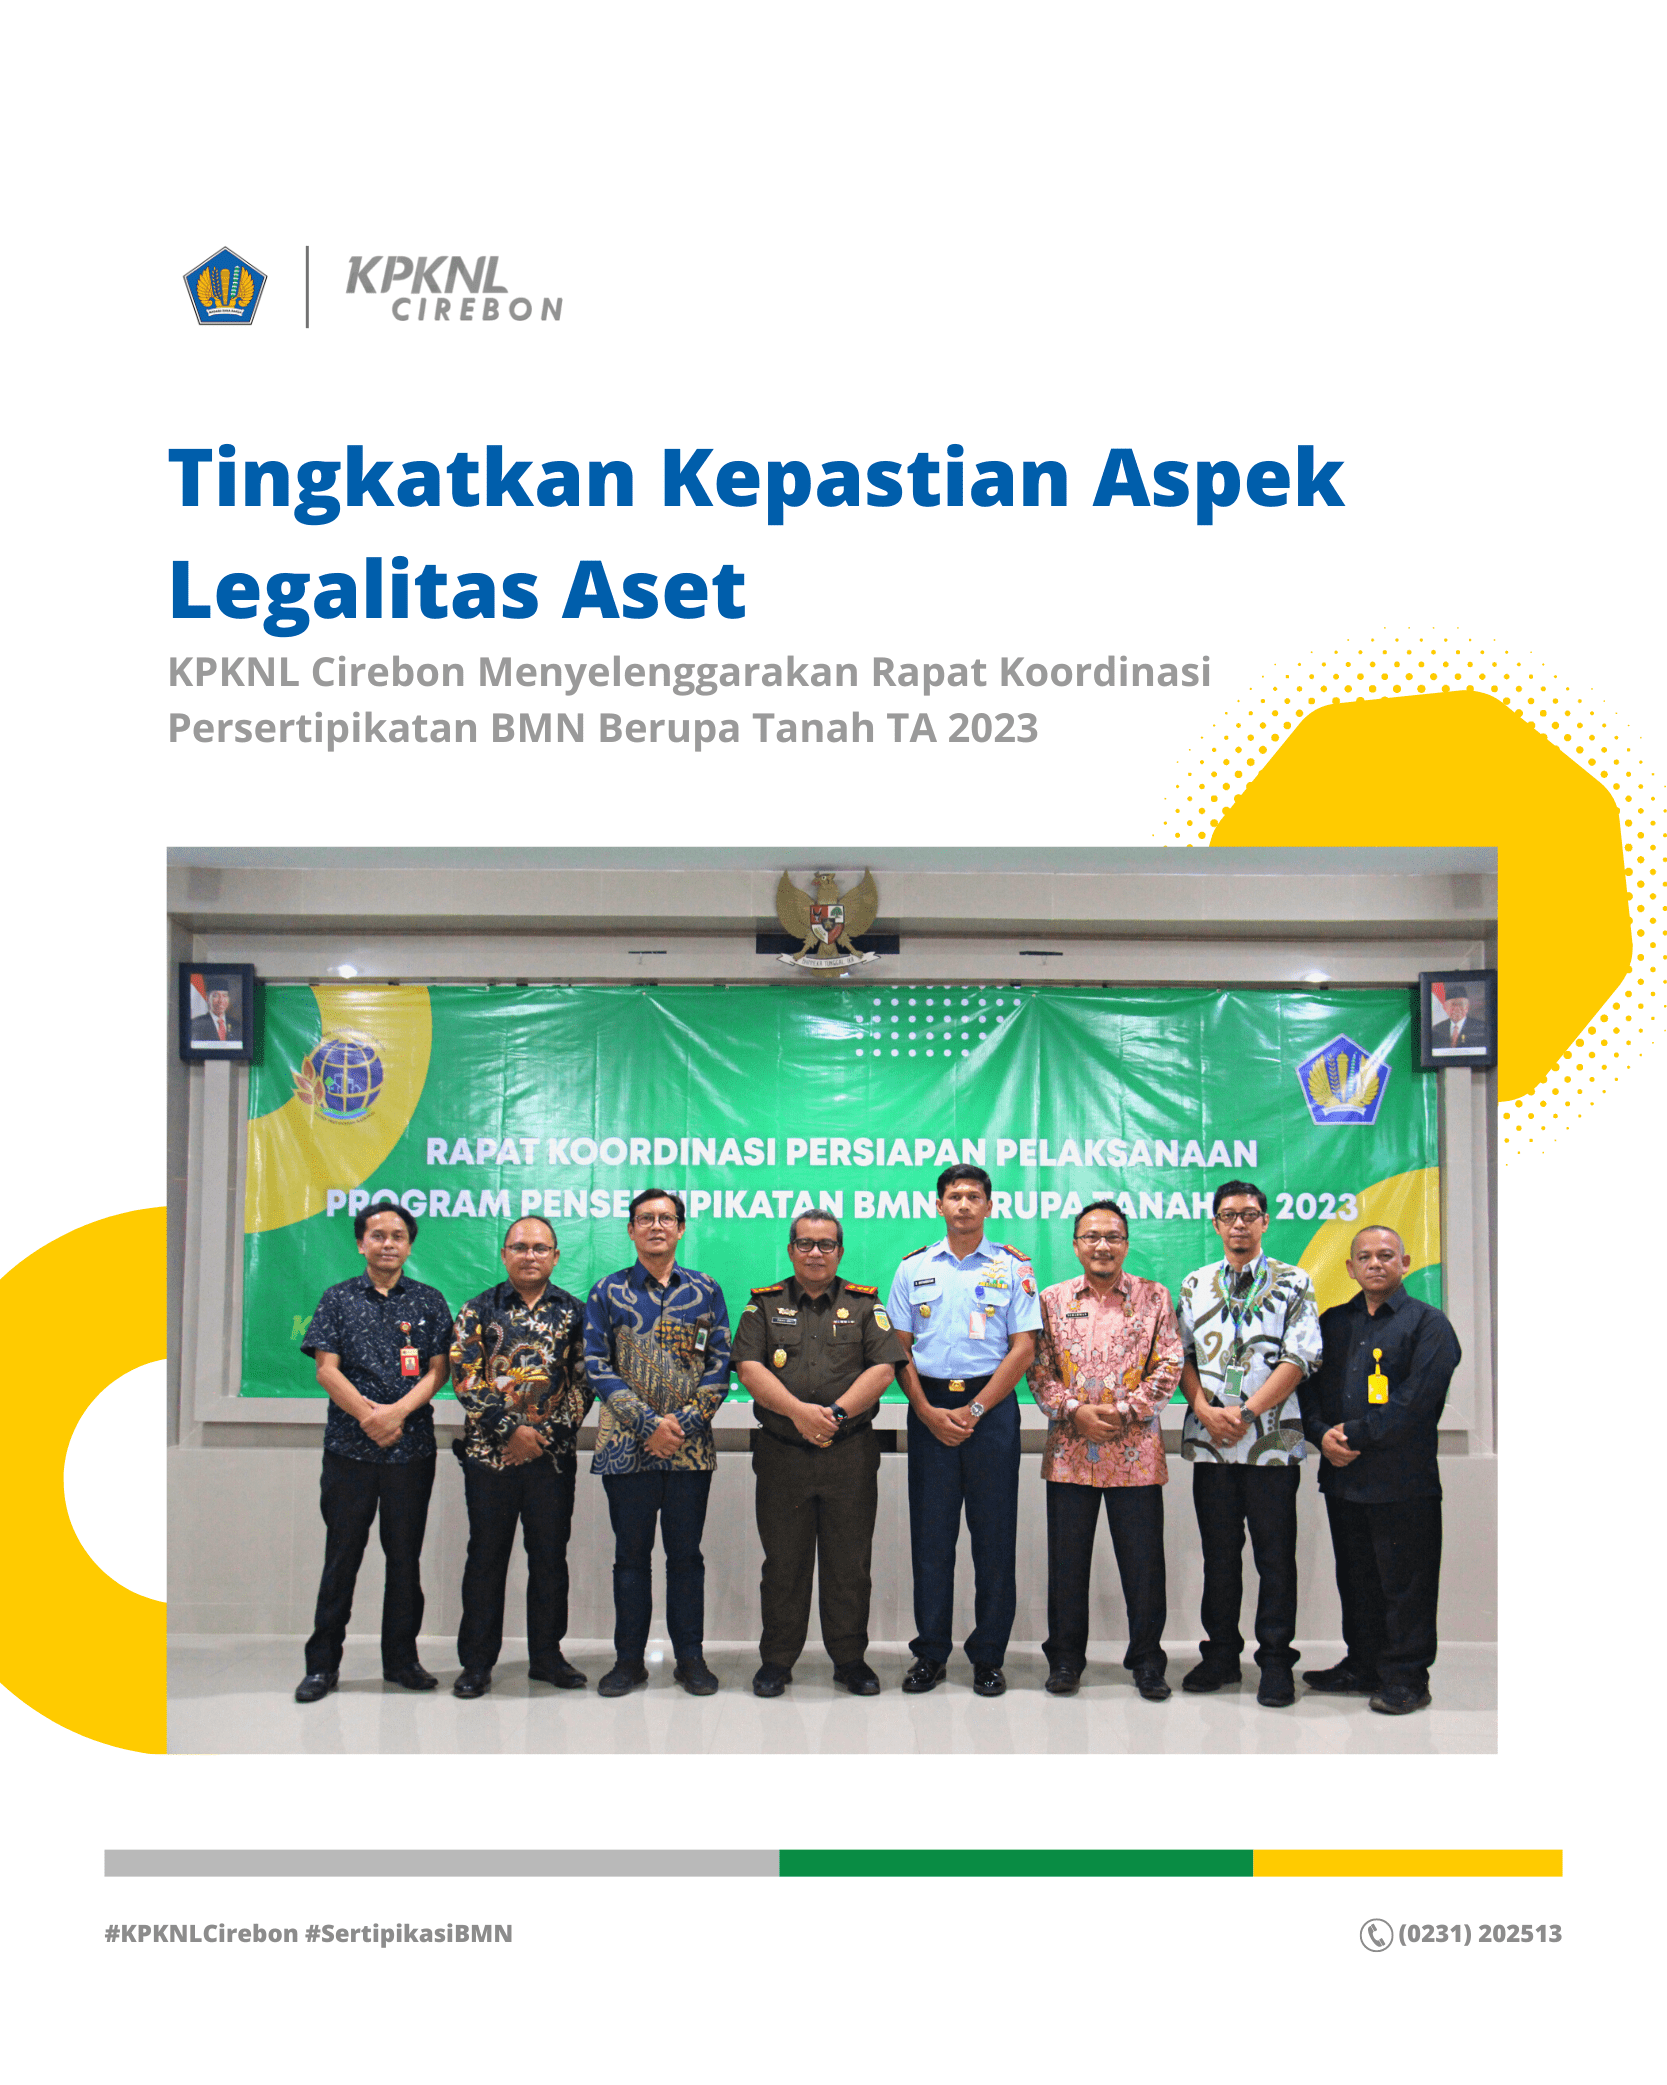 Tingkatkan Kepastian Aspek Legalitas Aset, KPKNL Cirebon Menyelenggarakan Rapat Koordinasi Persertipikatan BMN Berupa Tanah TA 2023